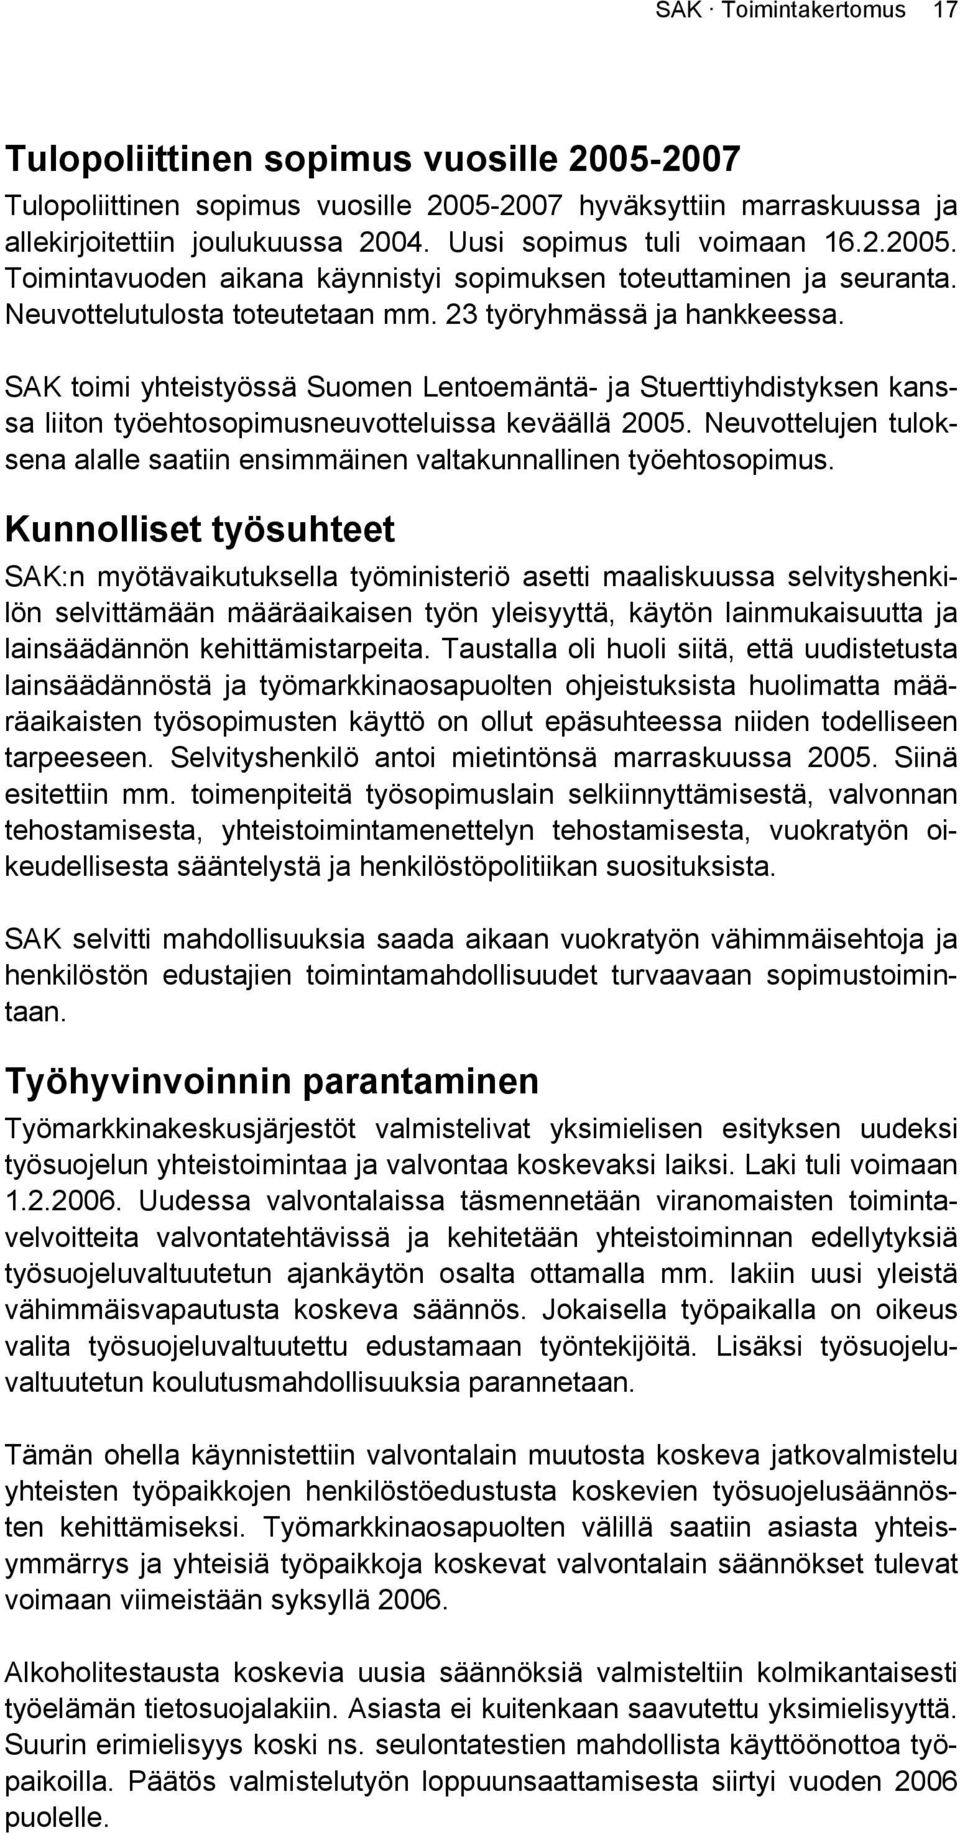 SAK toimi yhteistyössä Suomen Lentoemäntä- ja Stuerttiyhdistyksen kanssa liiton työehtosopimusneuvotteluissa keväällä 2005.